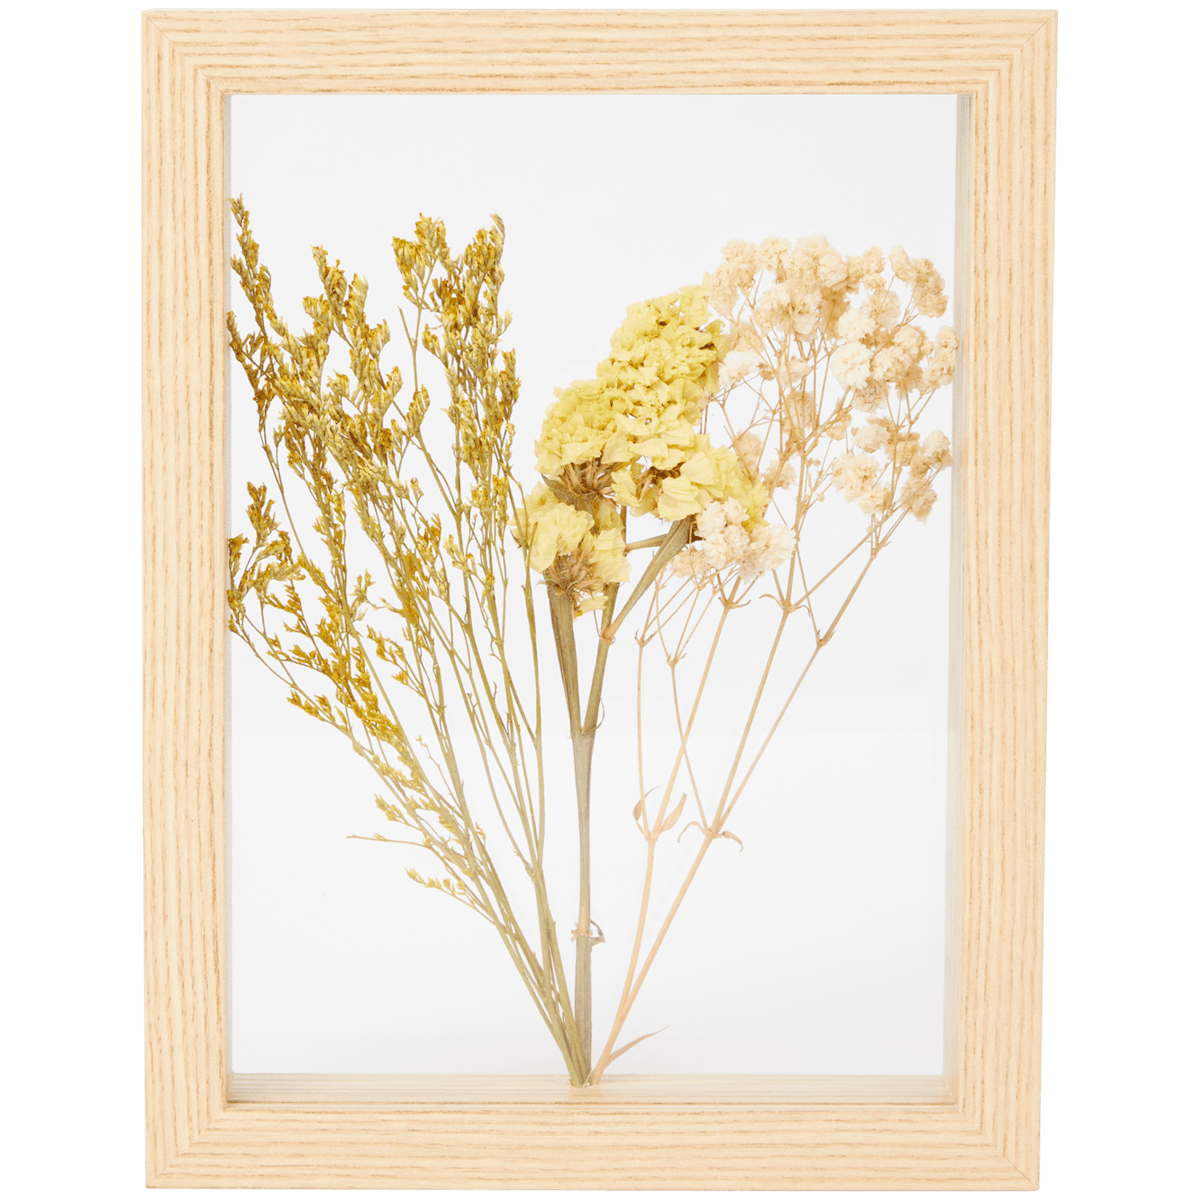 Marco de fotos con flores secas Home Accents